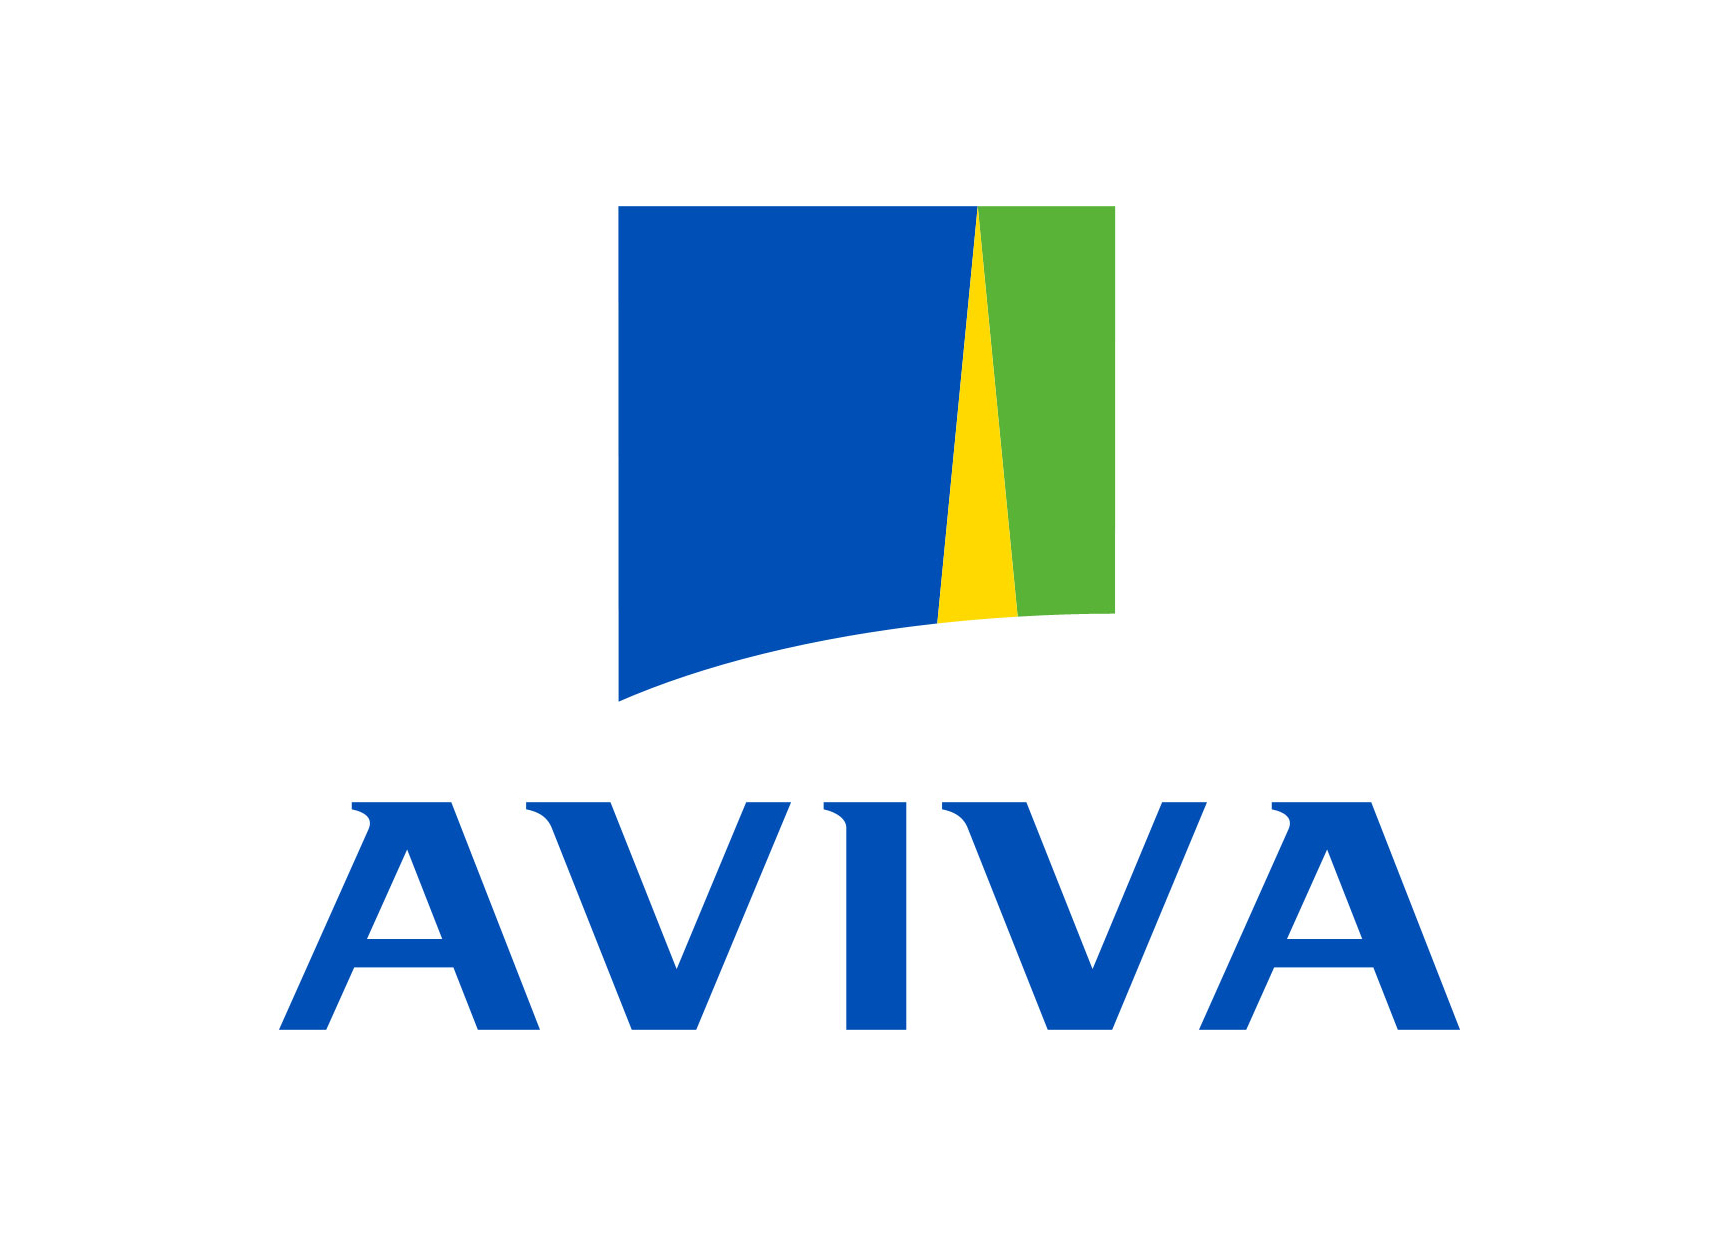 https://inspirationalrisk.com/wp-content/uploads/2021/02/Aviva_logo.jpg